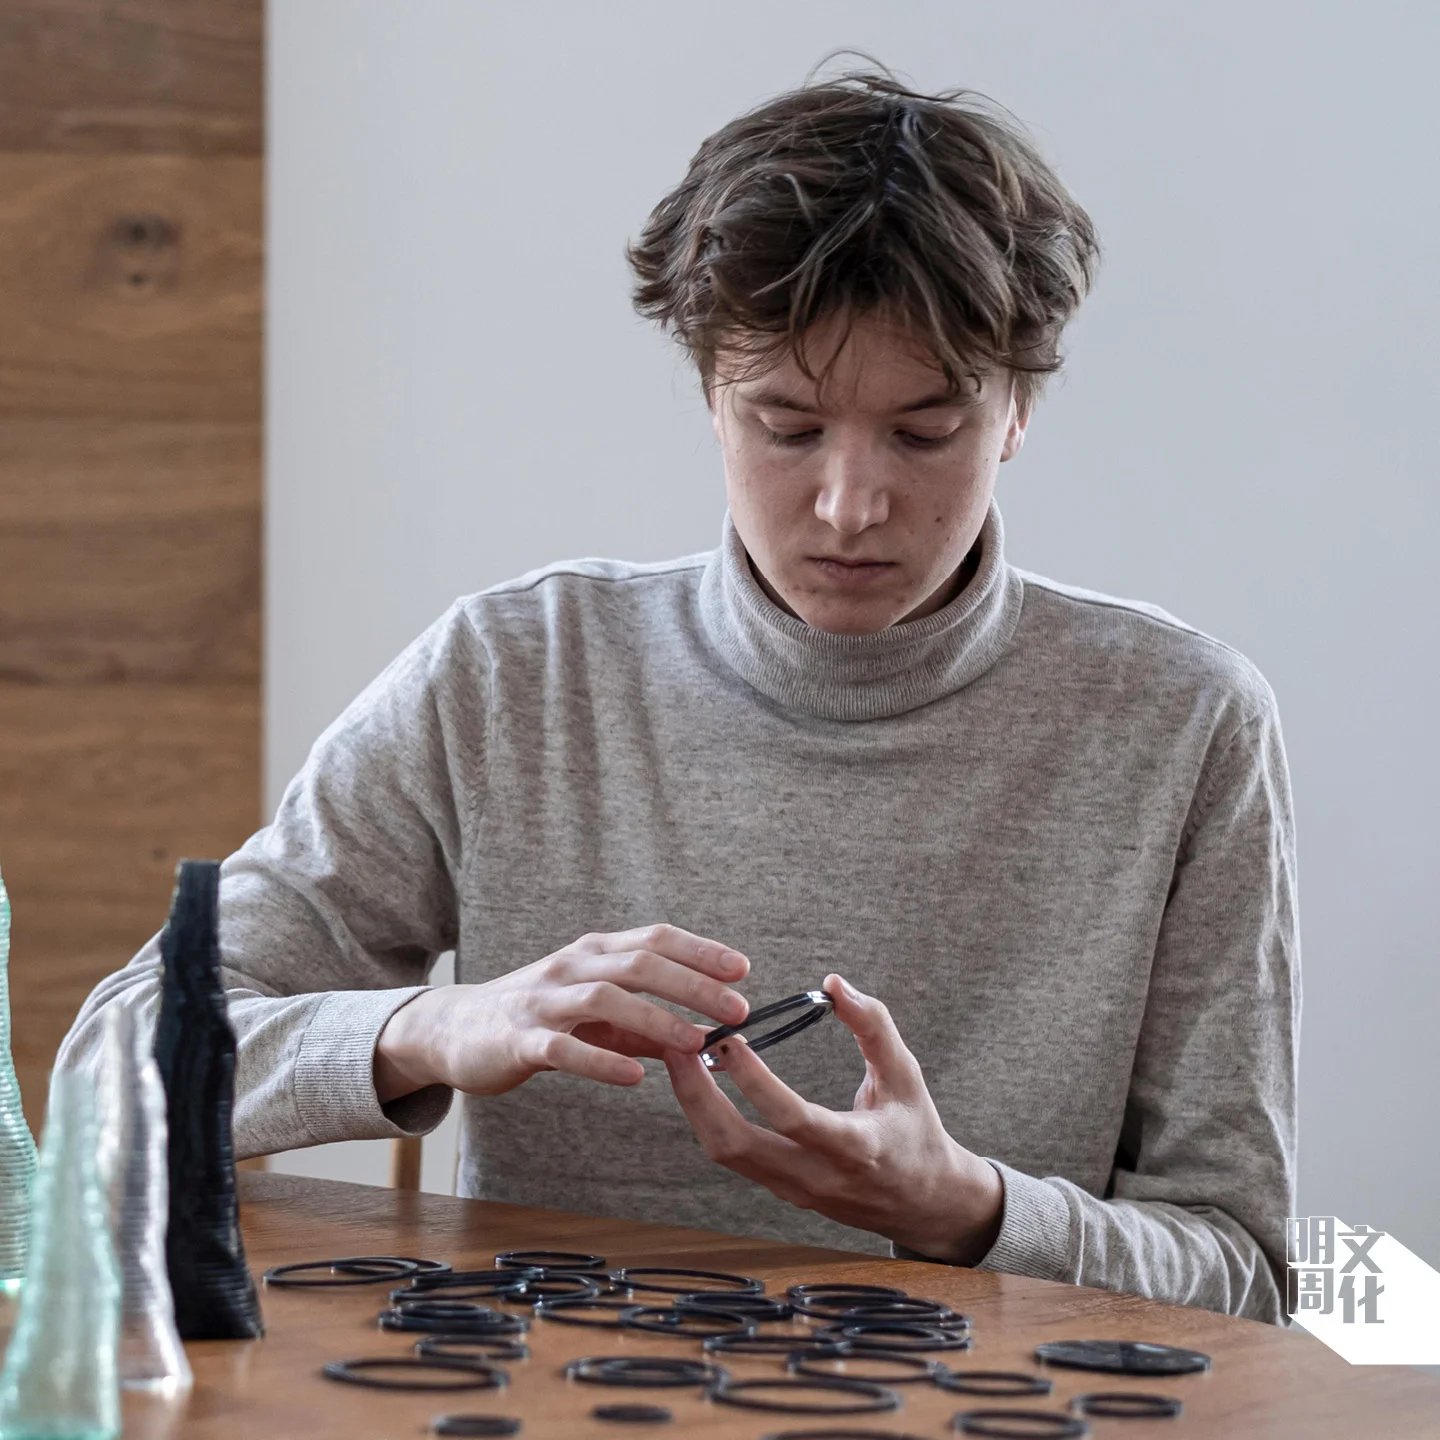 Daan De Wit於2019年成立自己的工作室